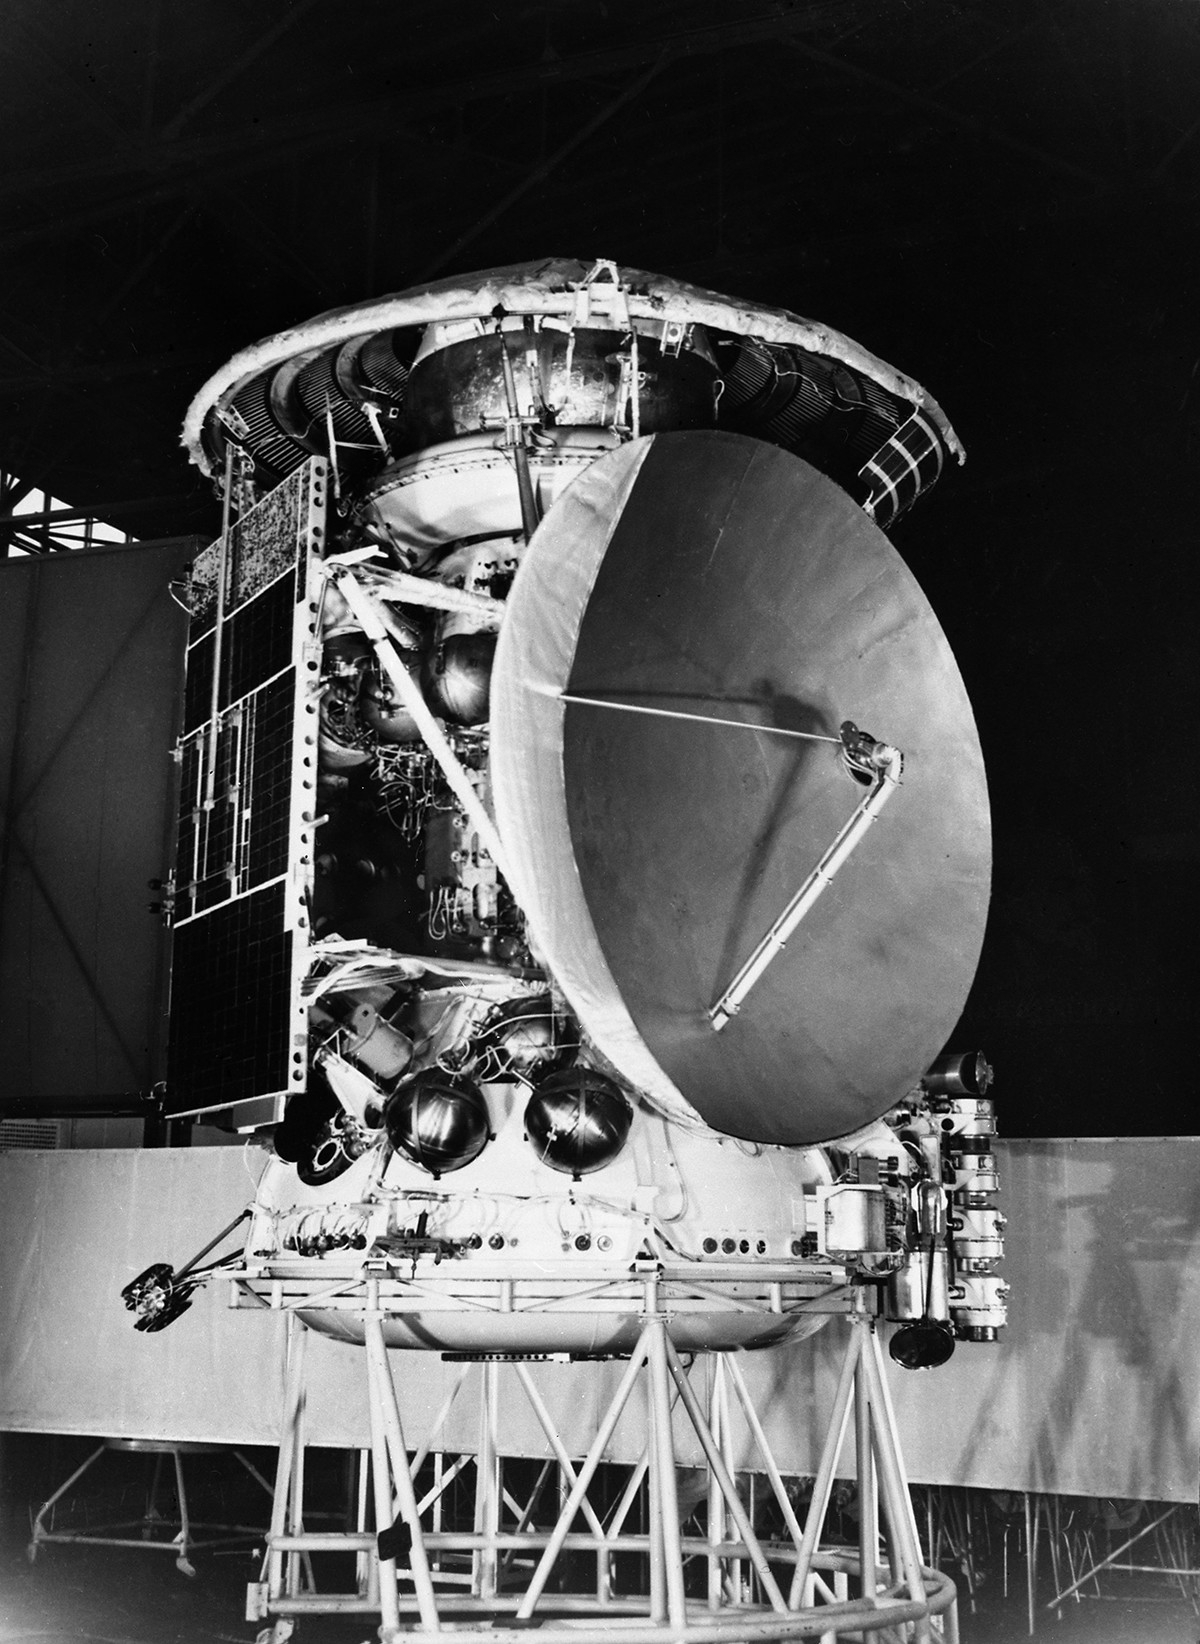 La sonda interplanetaria sovietica Mars 3 lanciata il 28 maggio 1971
